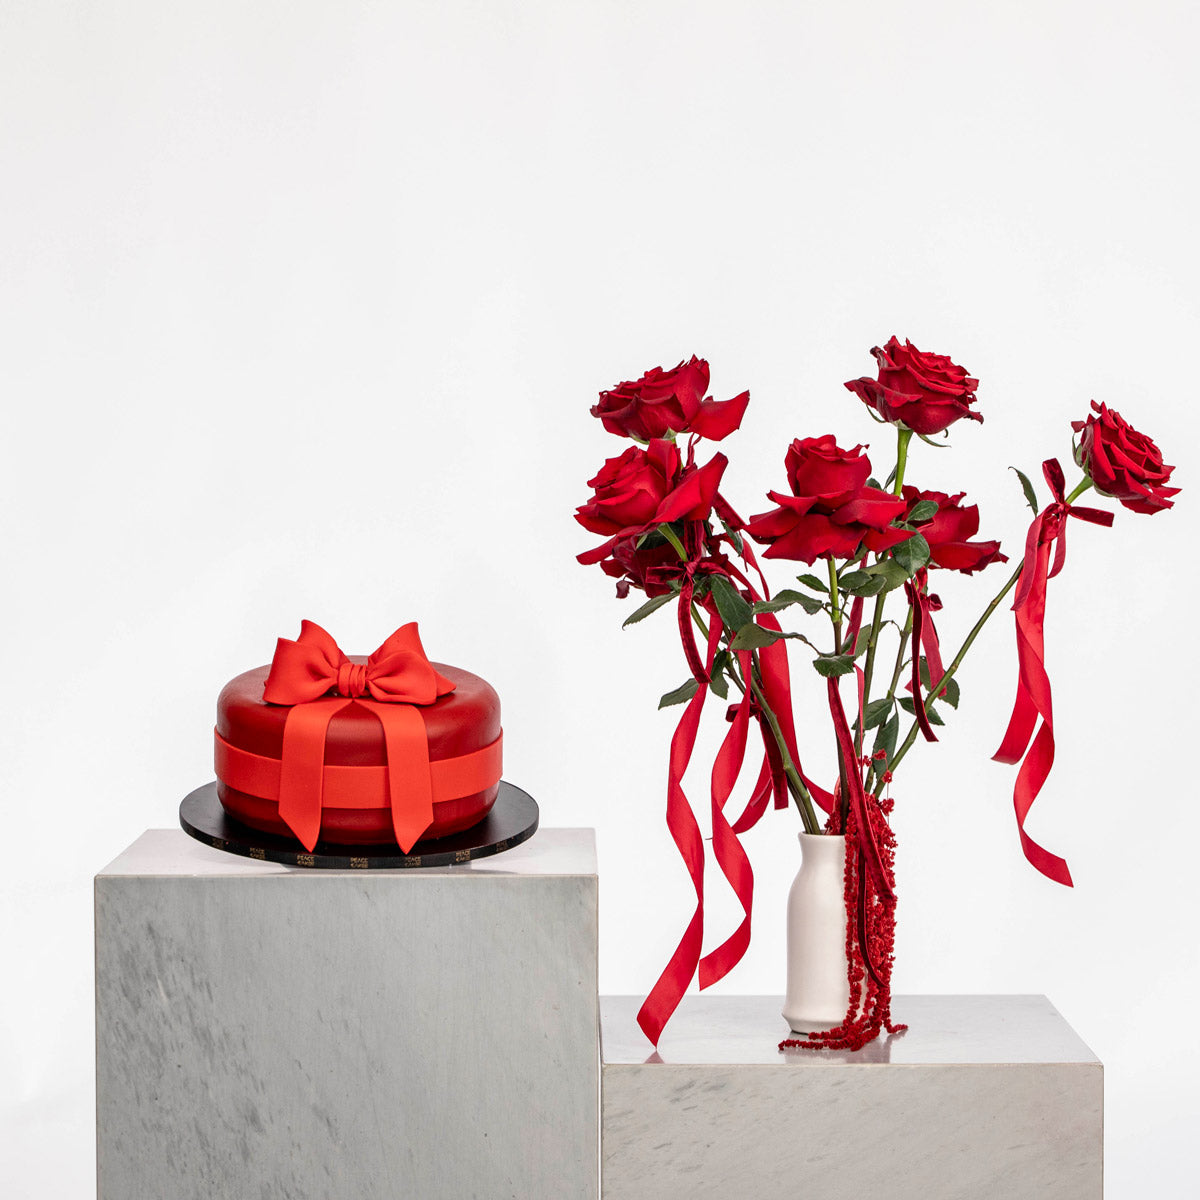 Romantic Roses & Cake Ensemble